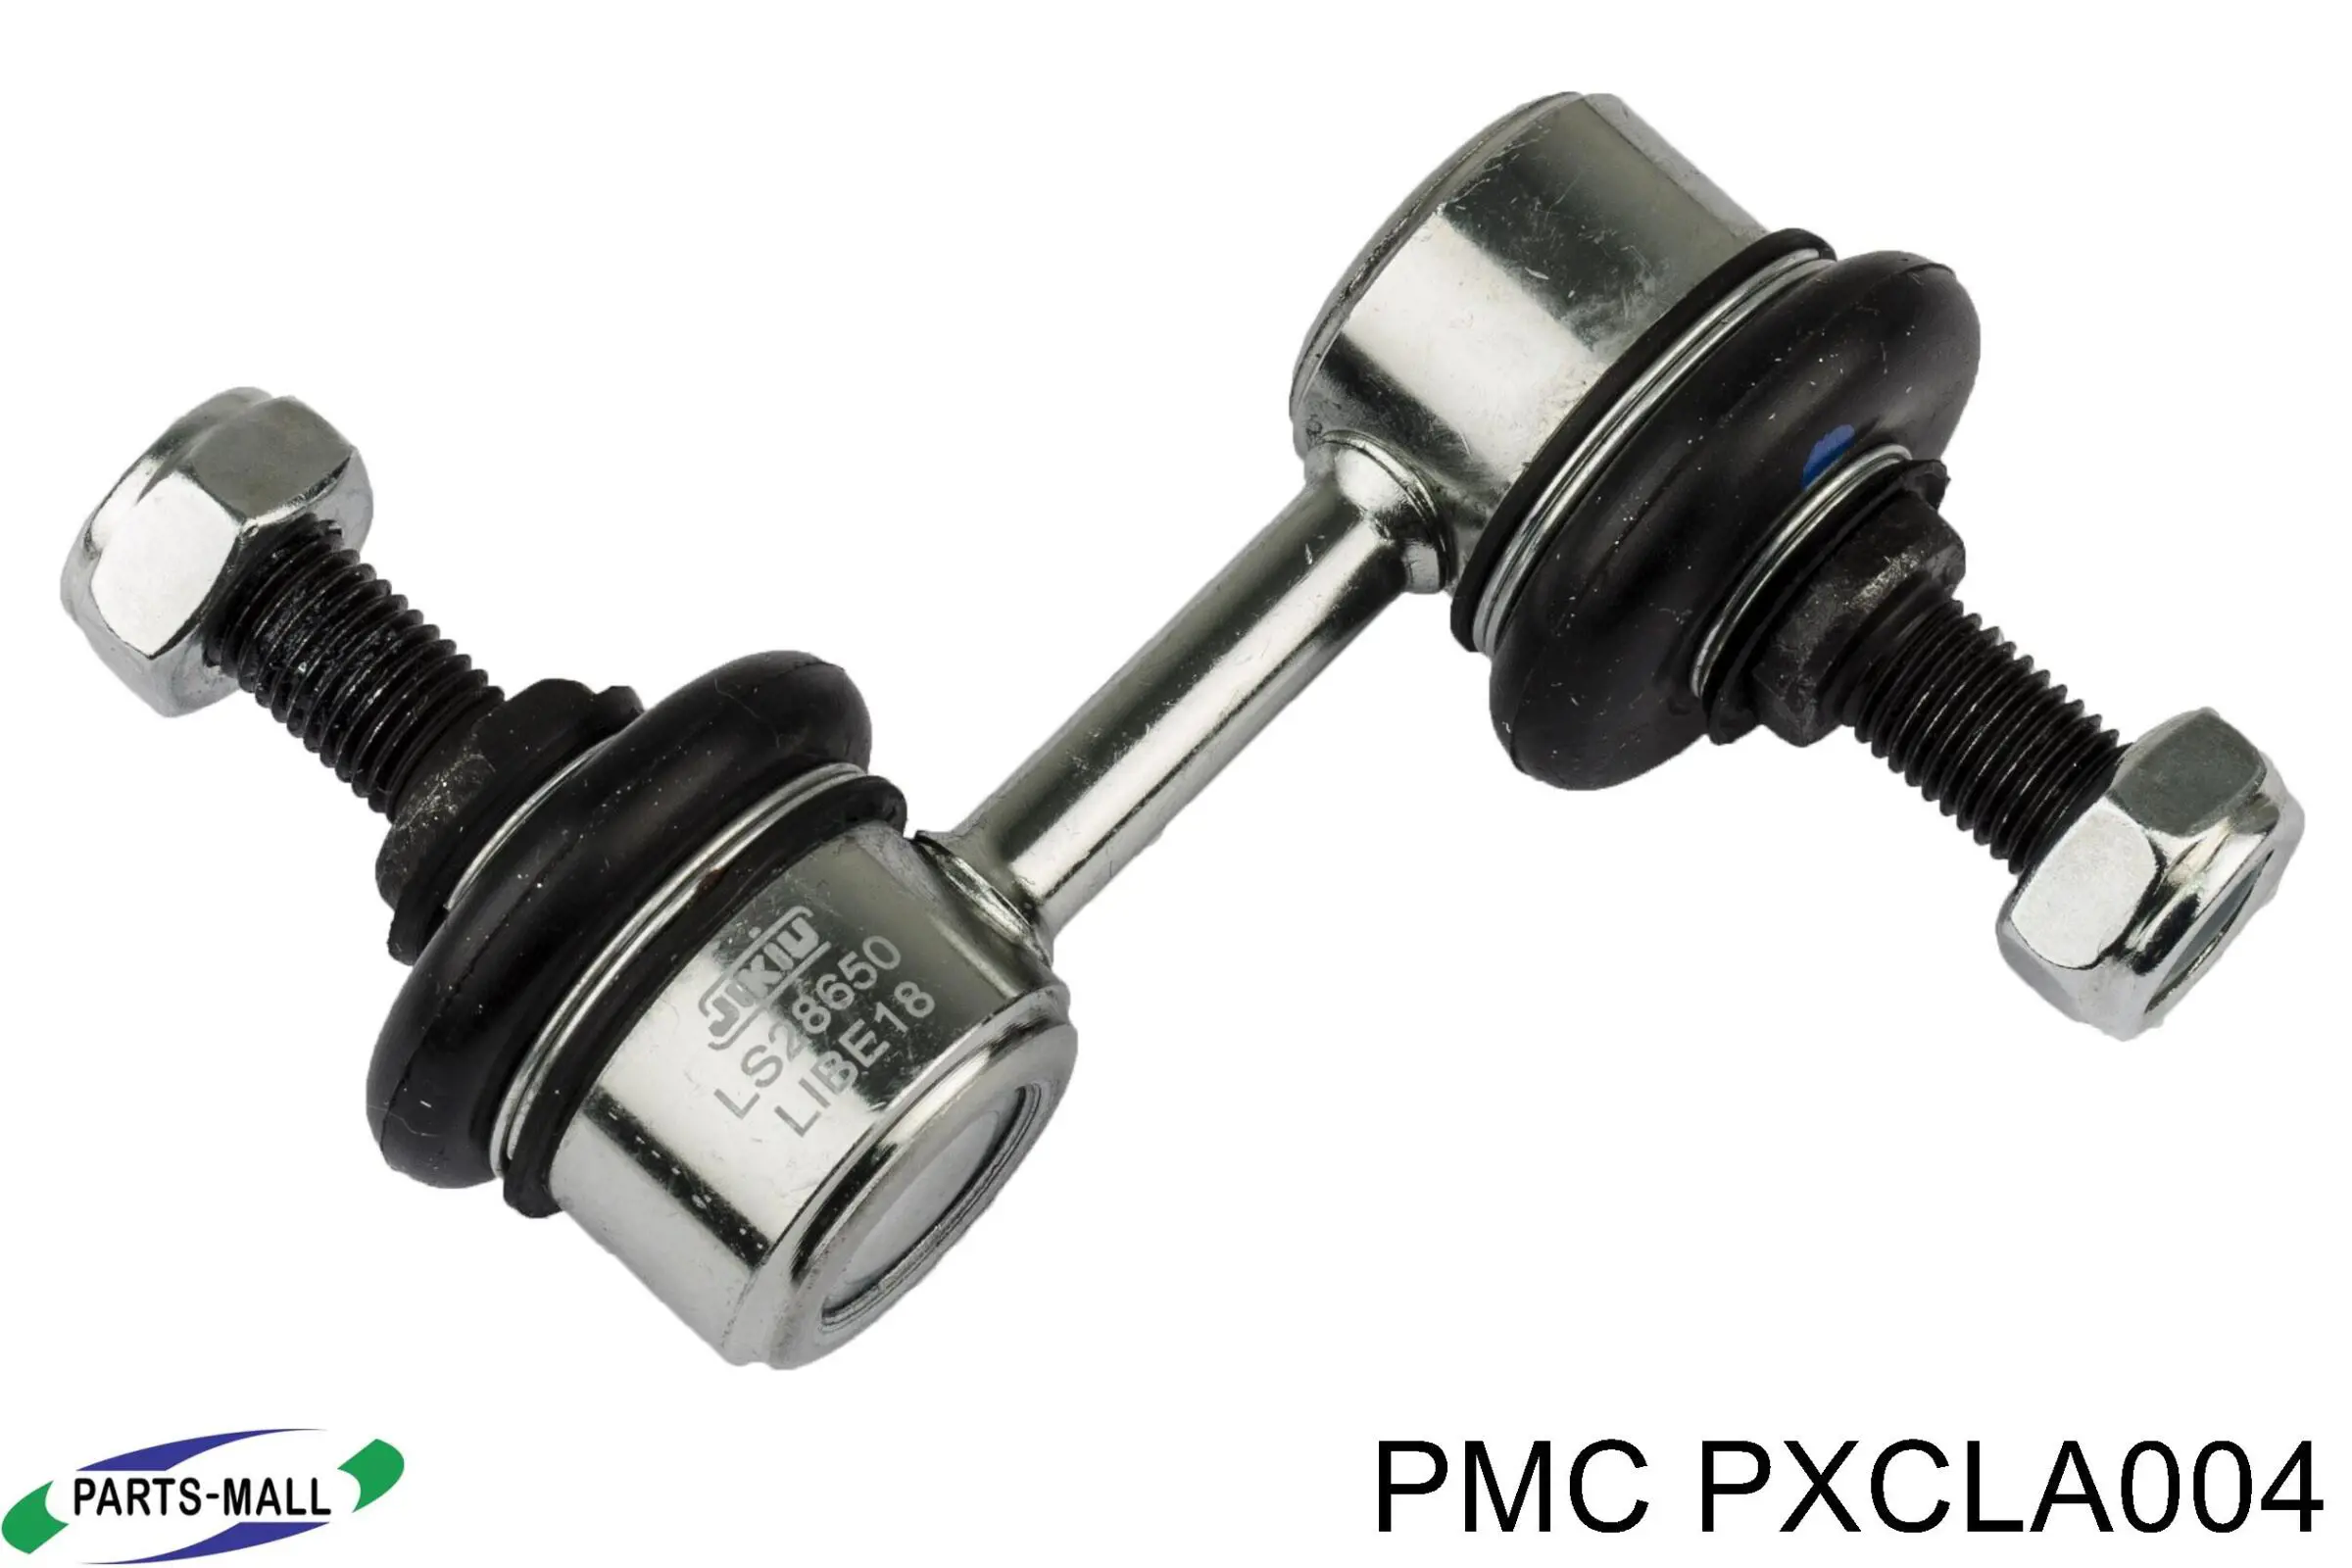 PXCLA-004 Parts-Mall soporte de barra estabilizadora trasera